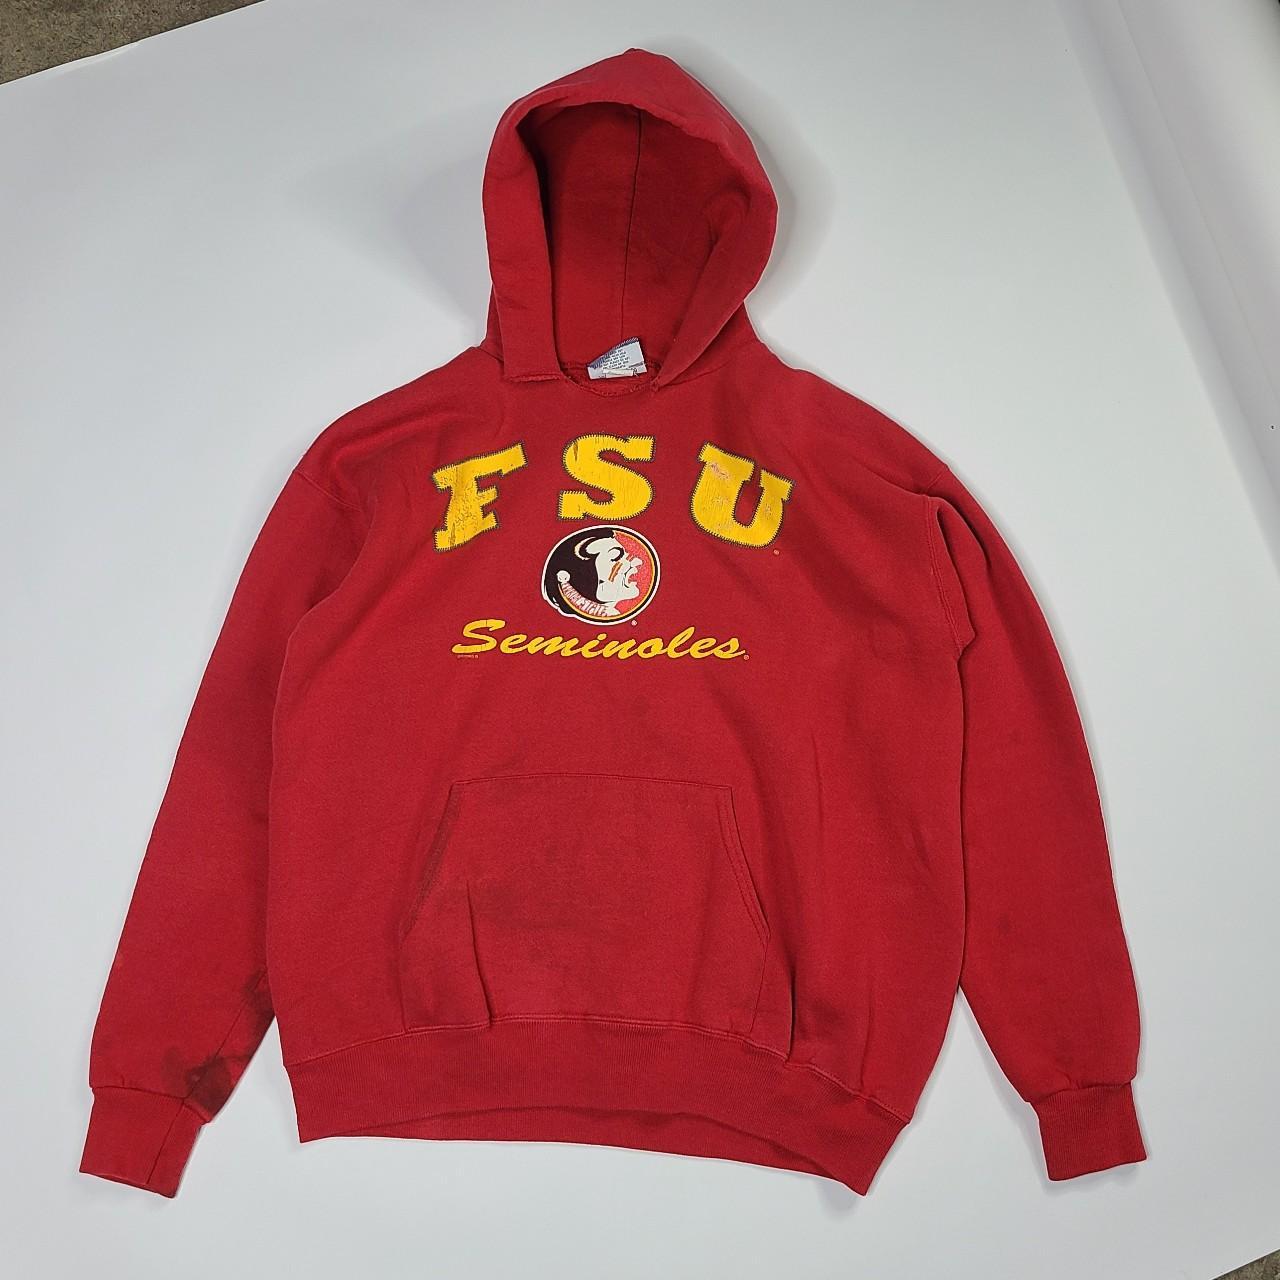 Distressed vintage FSU Seminoles hoodie sz L made in... - Depop